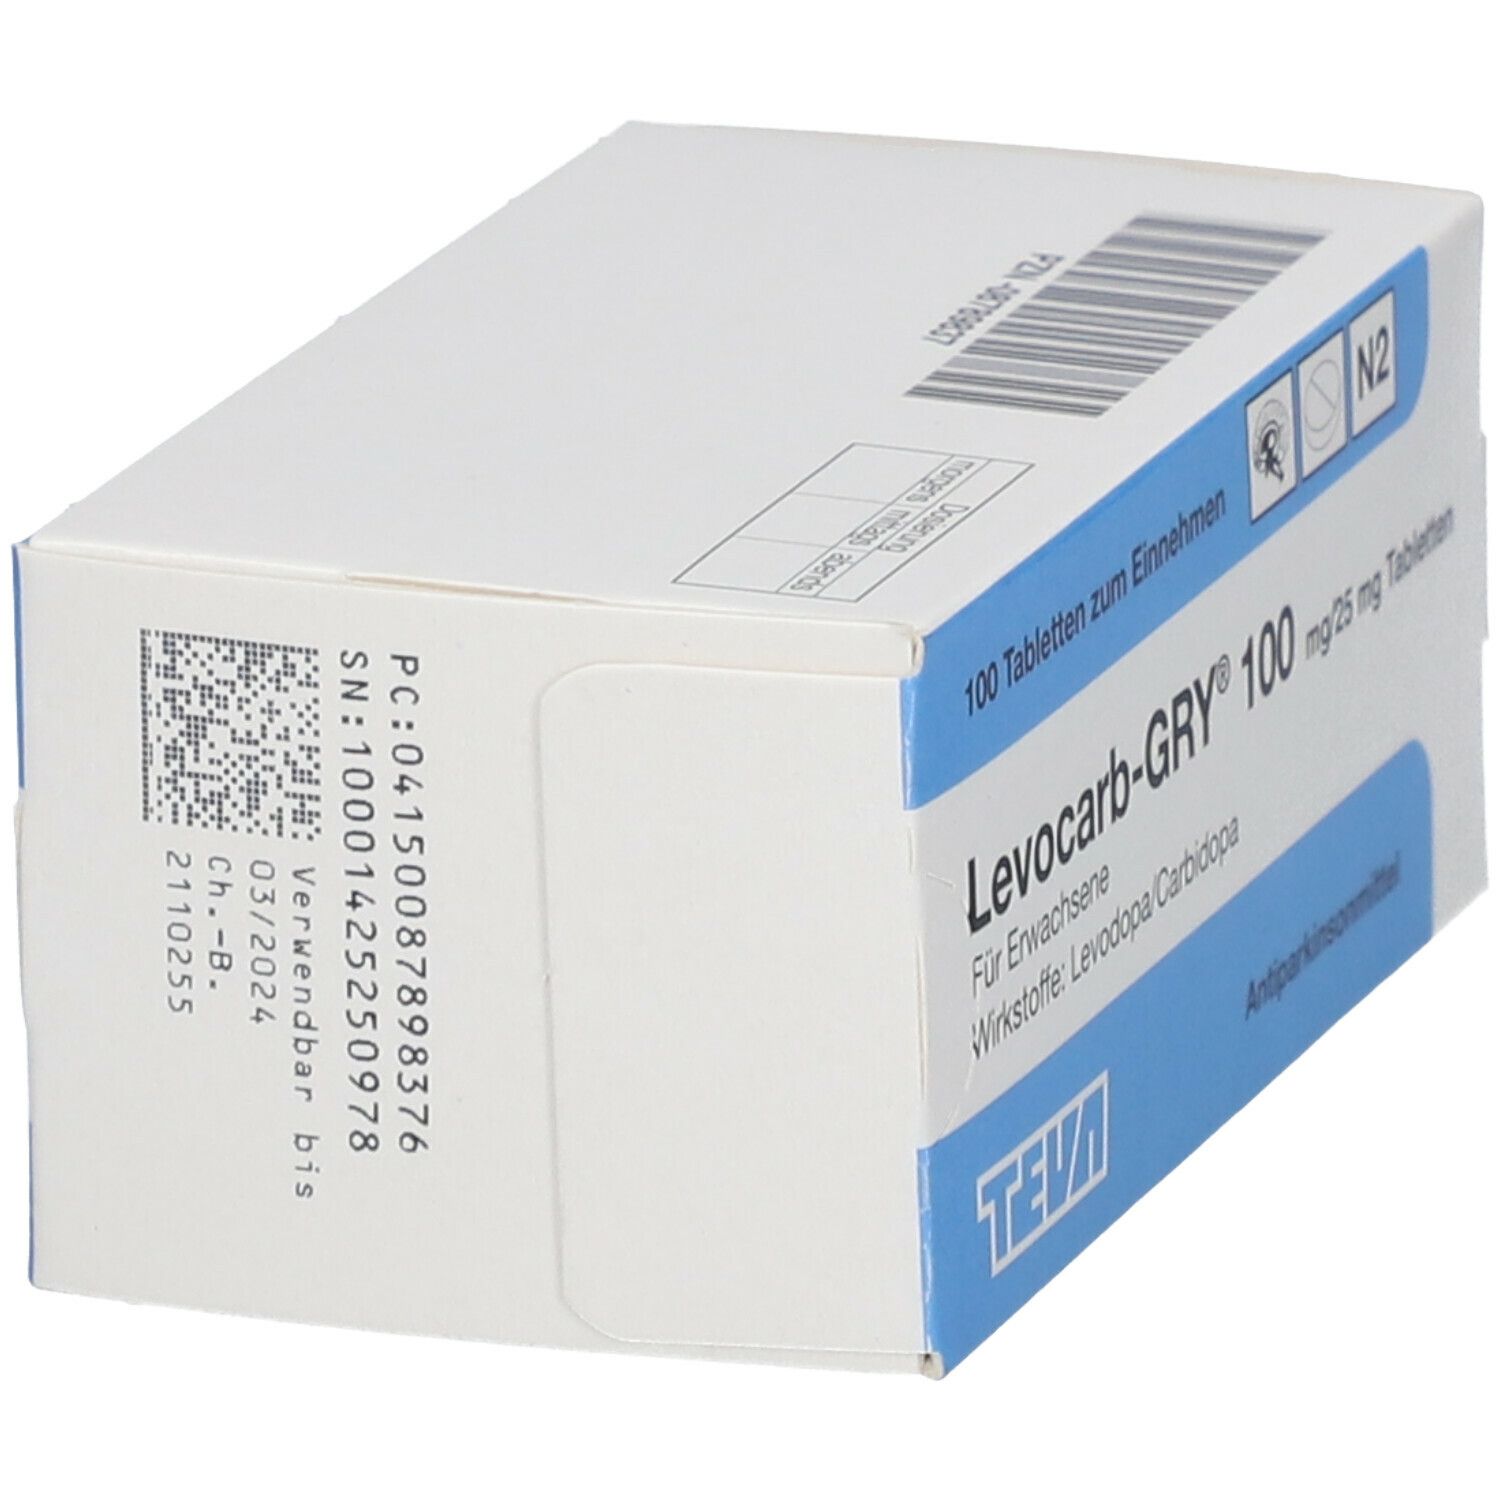 Levocarb-GRY® 100 mg/25 mg